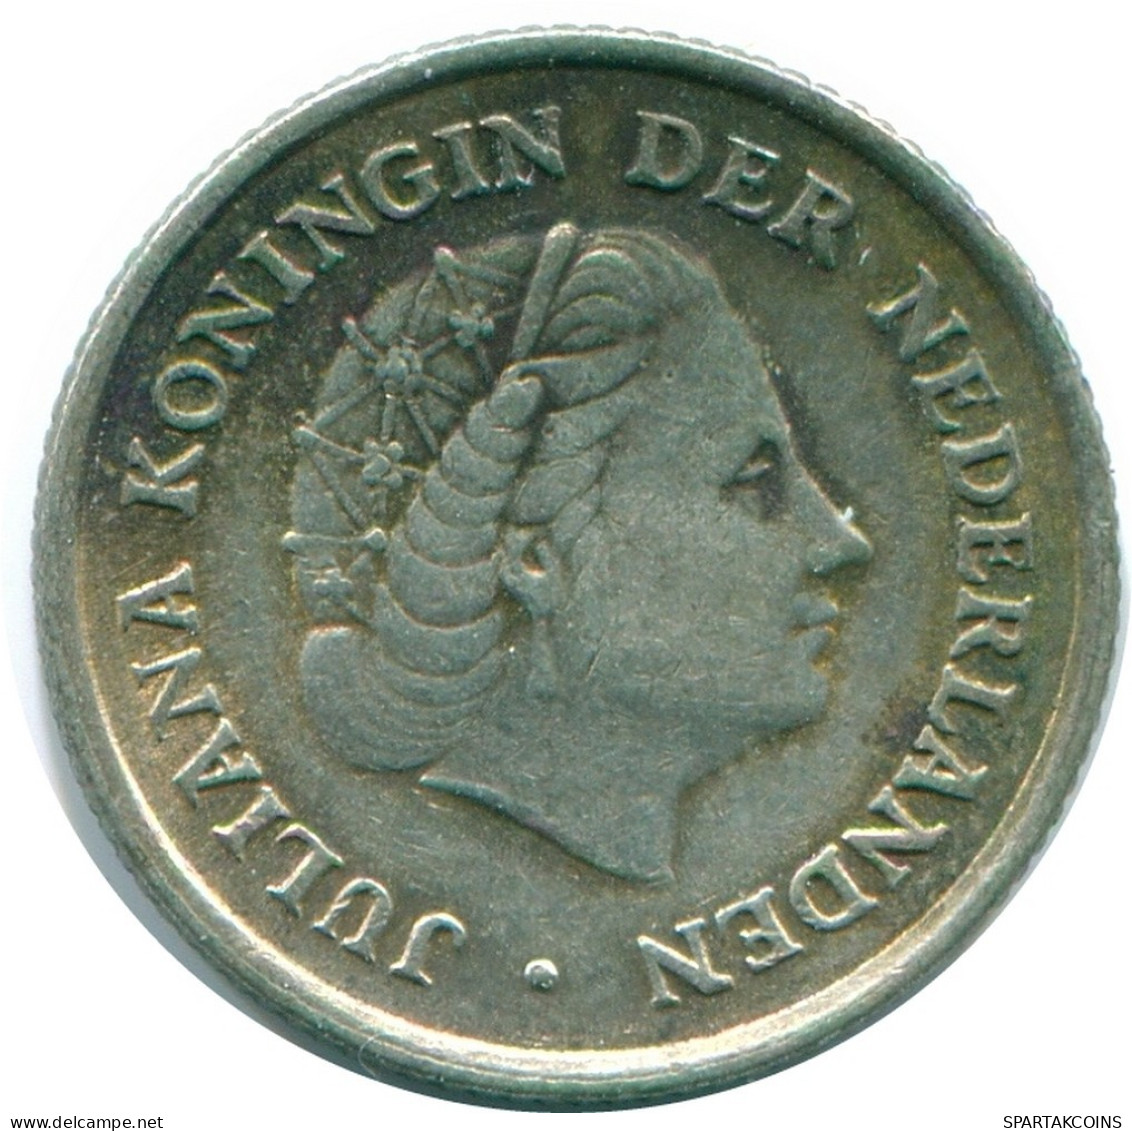 1/10 GULDEN 1957 NIEDERLÄNDISCHE ANTILLEN SILBER Koloniale Münze #NL12176.3.D.A - Niederländische Antillen